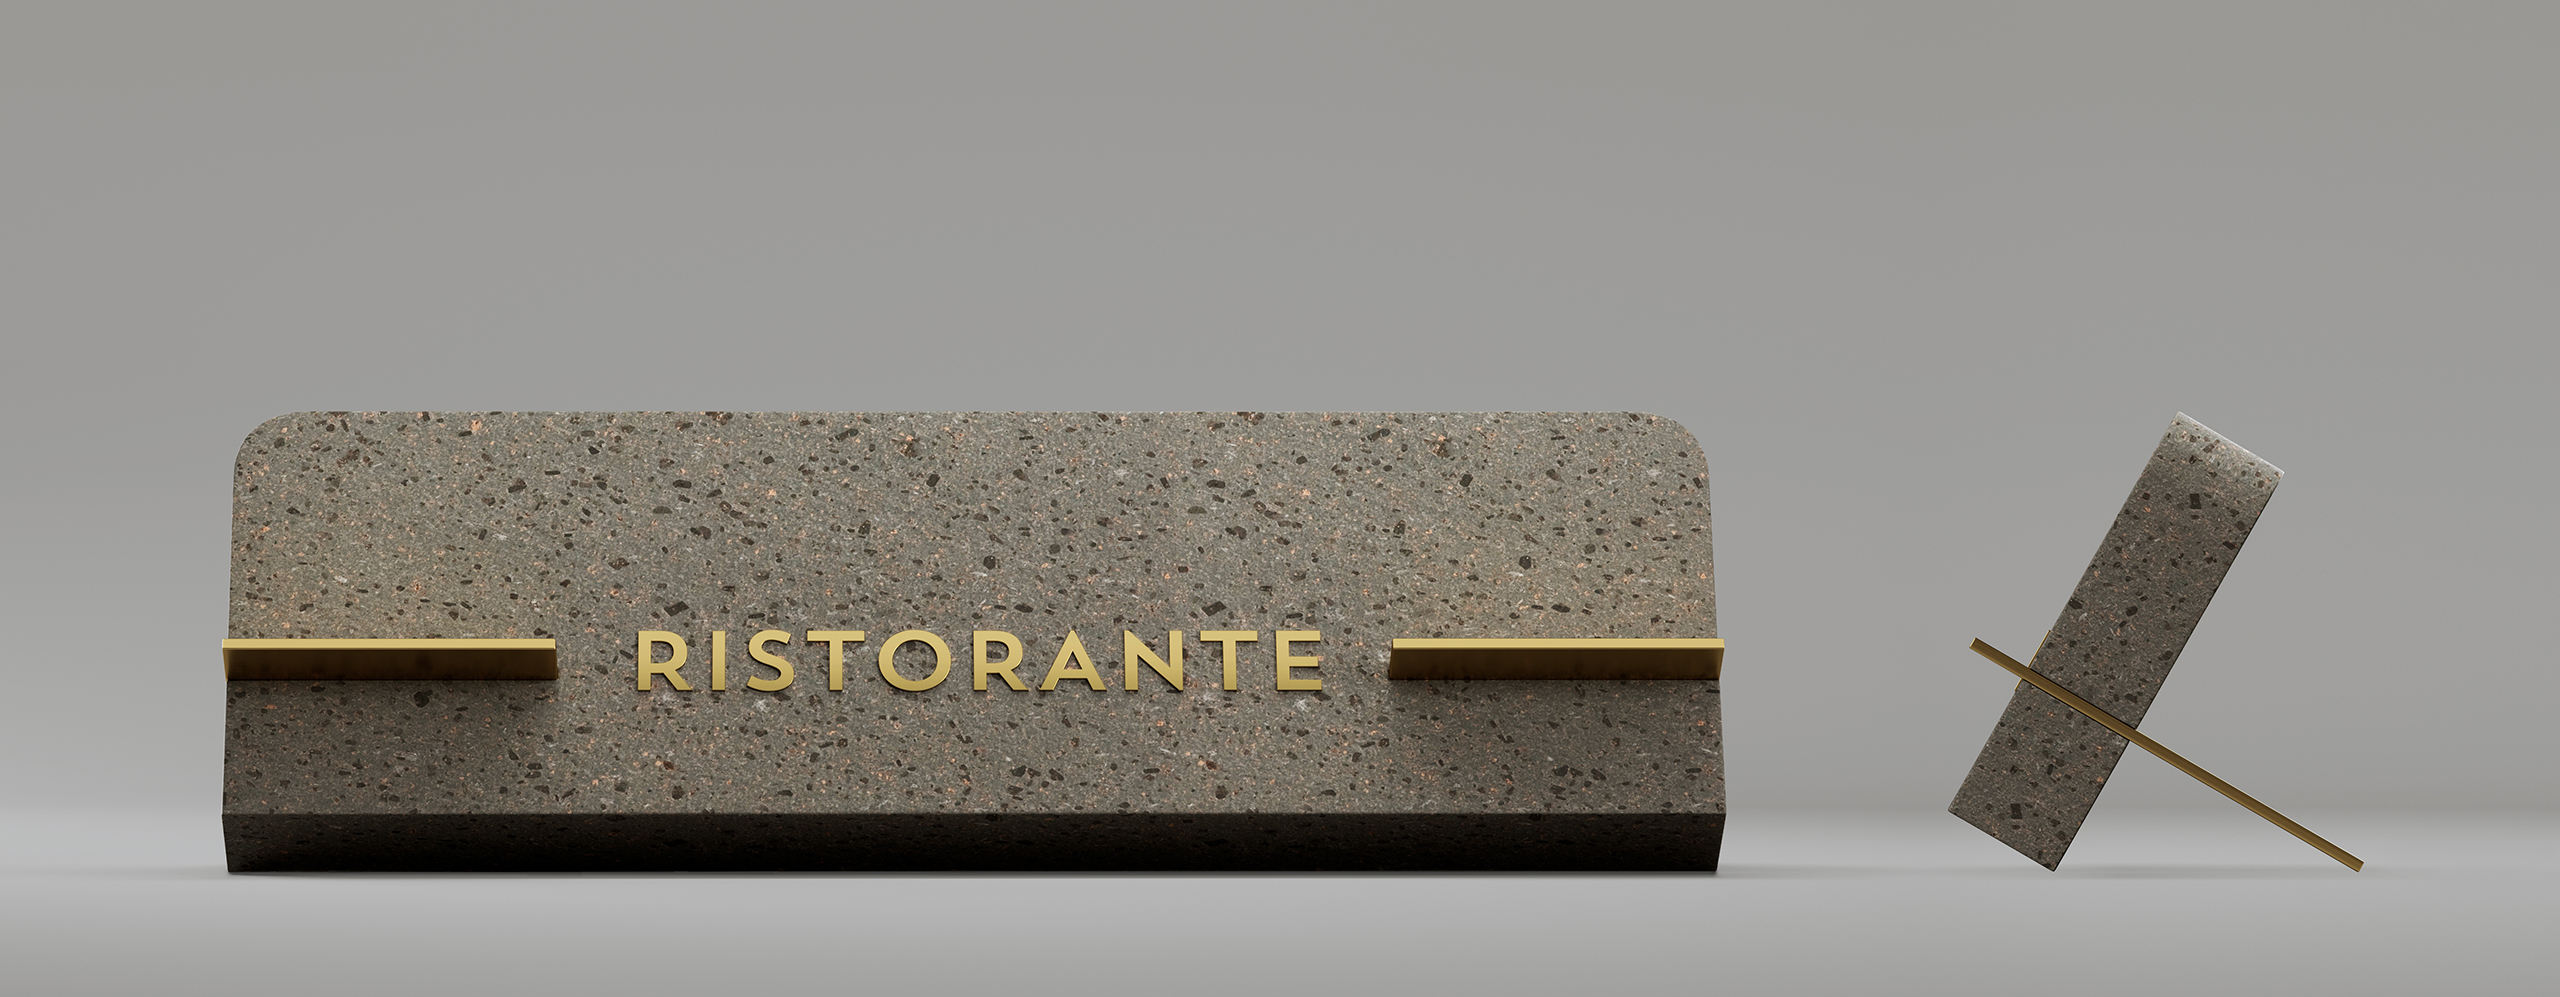 Rendu 3D d'une plaque de restaurant en marbre avec des lettres dorées sur le fond gris